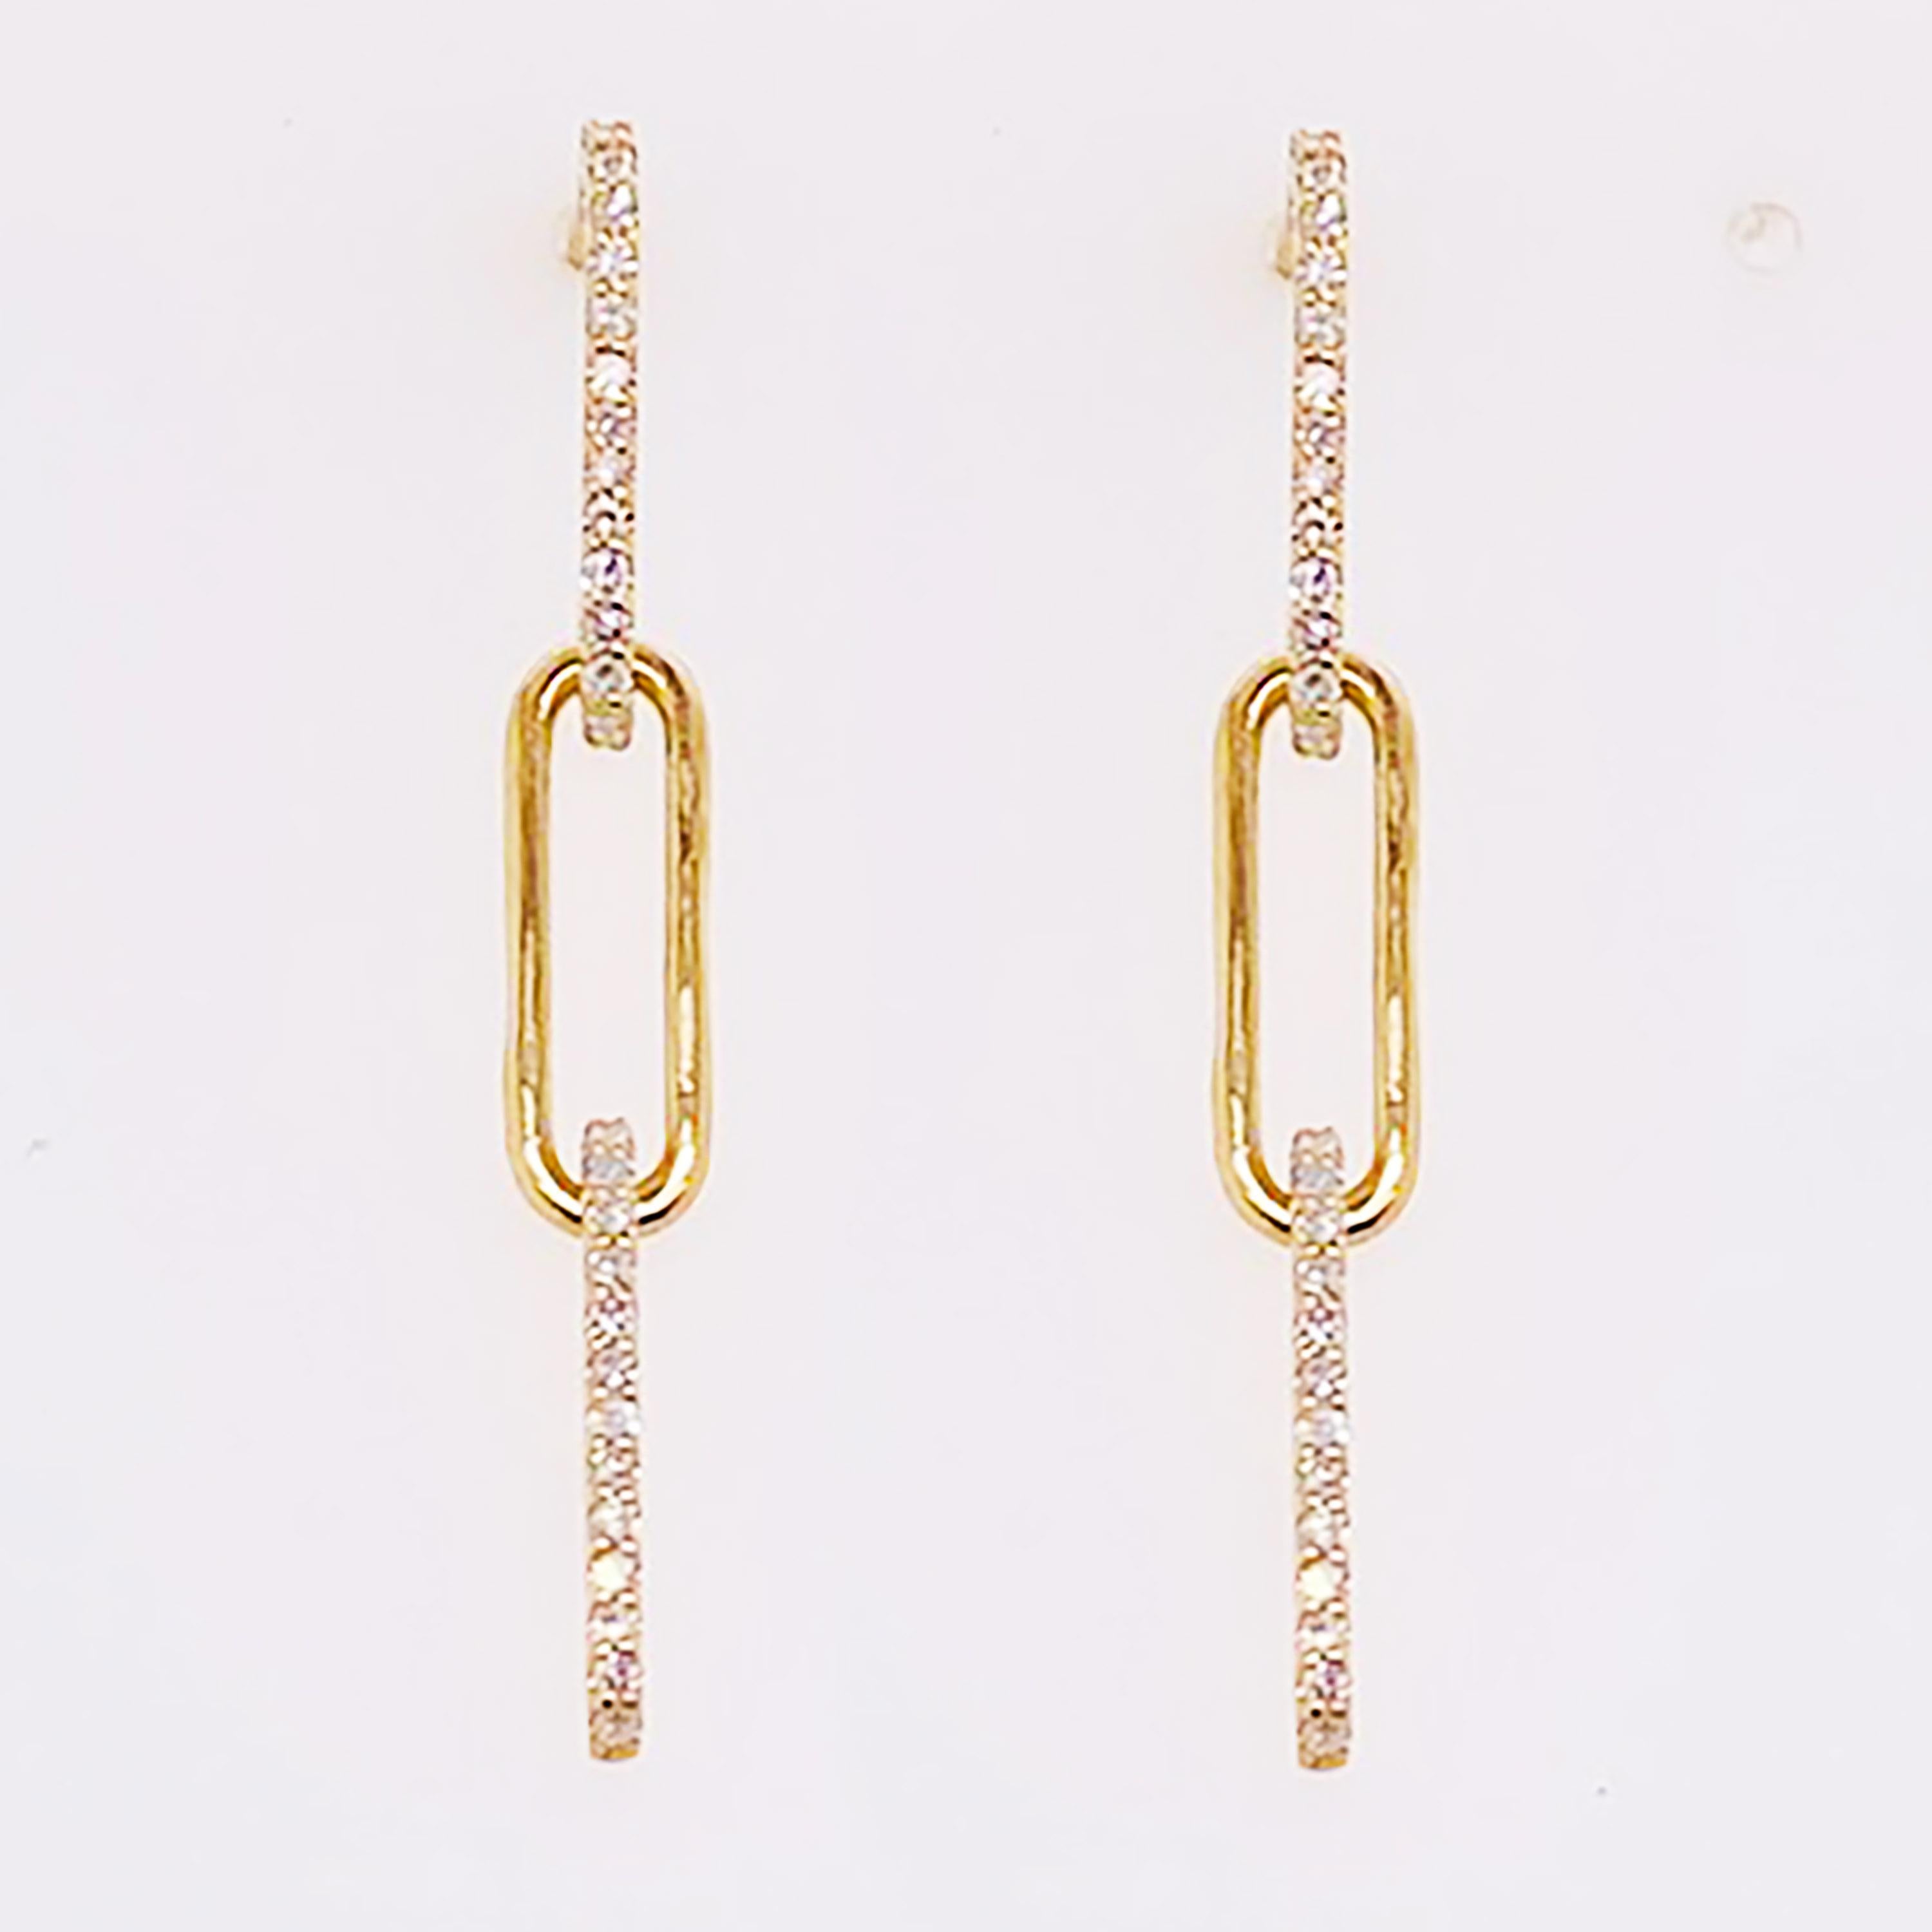 gold earrings 21 carat